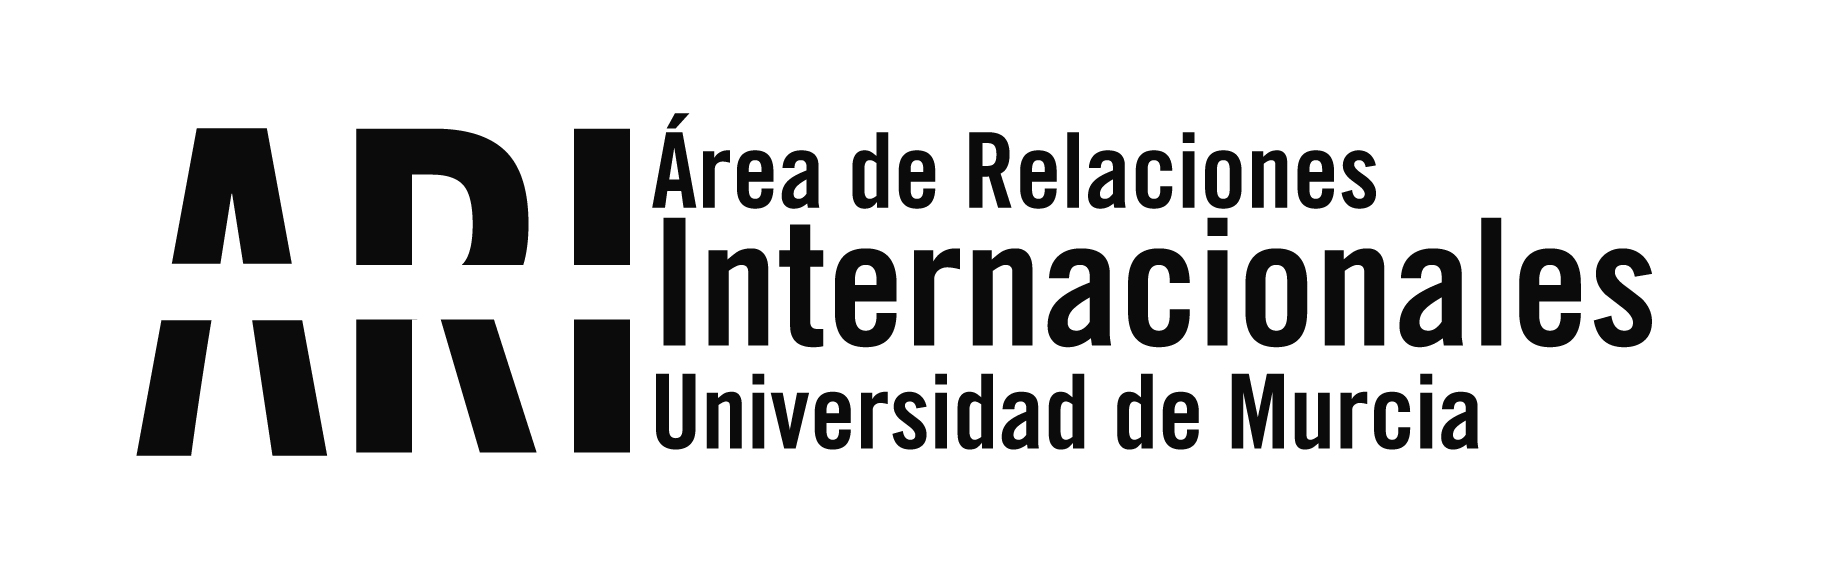 La UM en la Feria Internacional de Educación EAIE 2017 en Sevilla - Área de Relaciones Internacionales